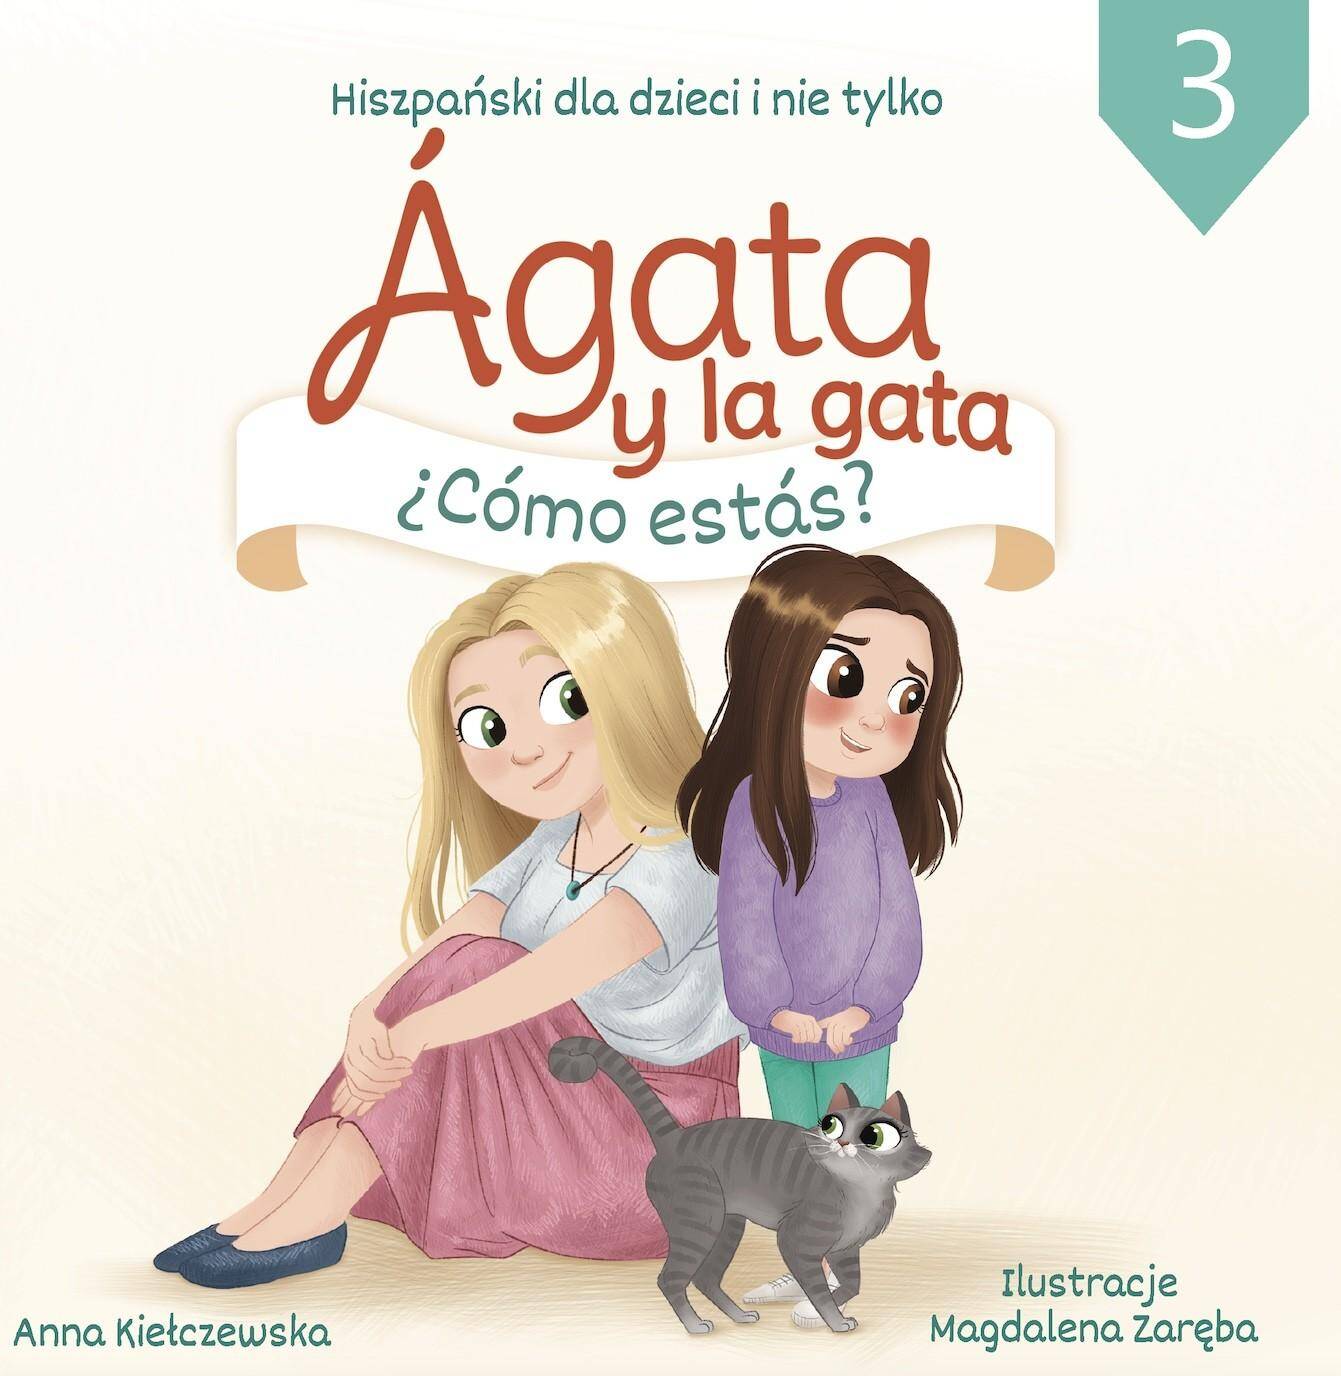 Agata y la gata. Hiszpański dla dzieci i nie tylko. Część 3